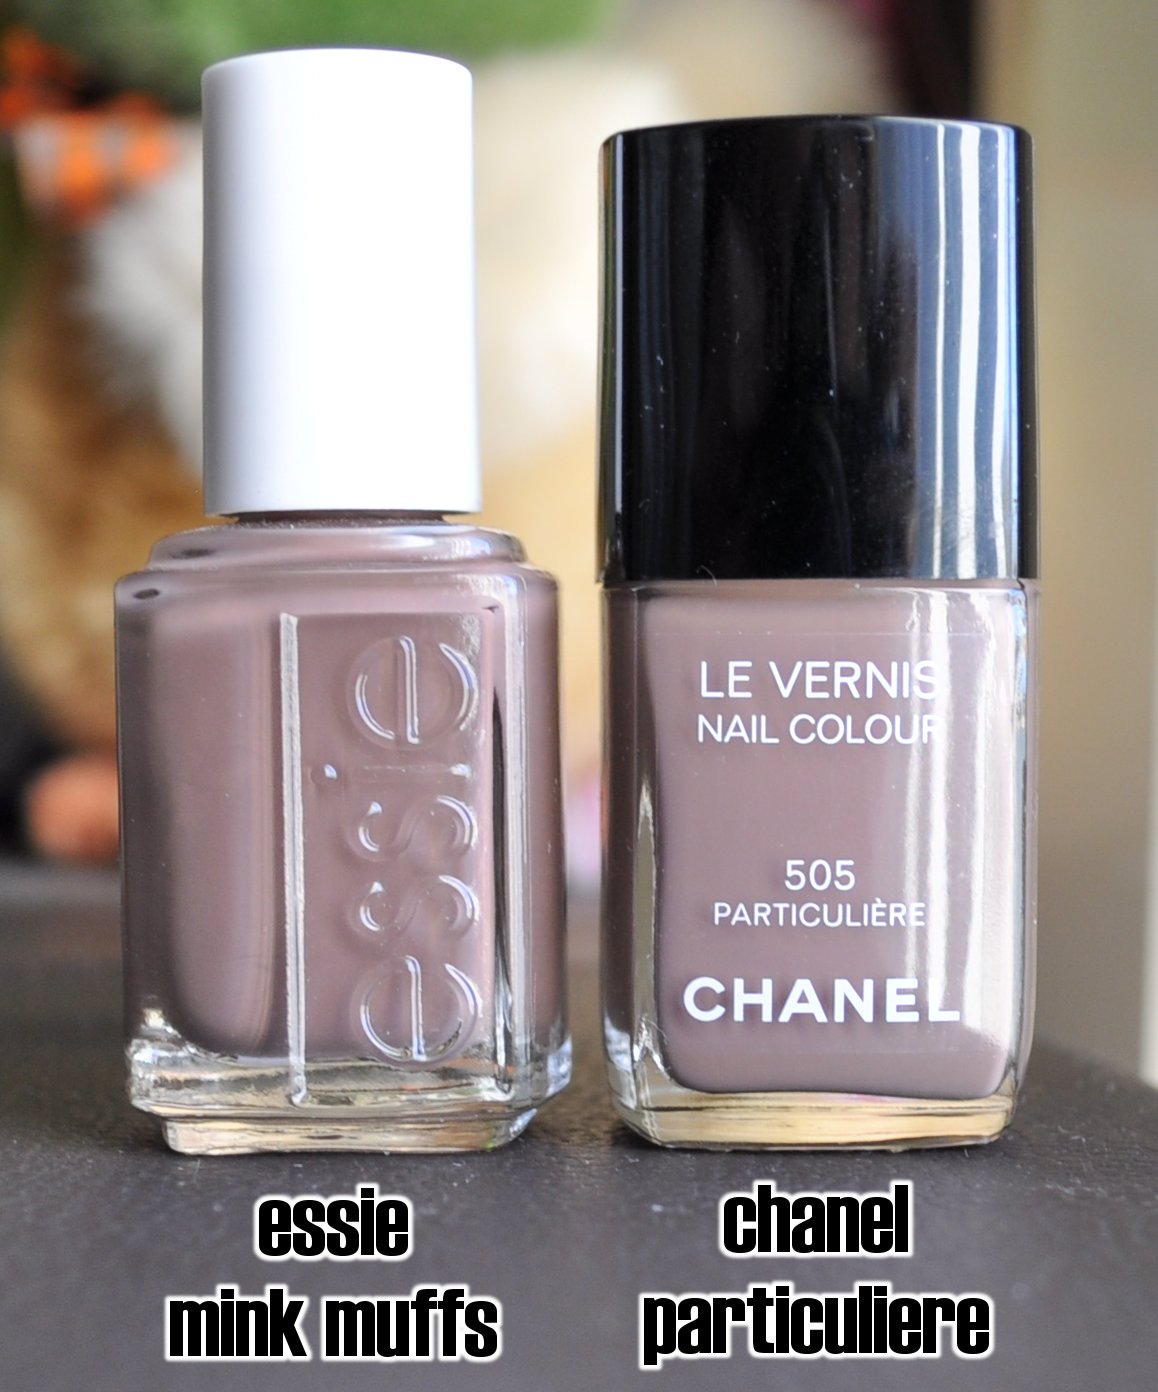 Chanel Particuliere vs Essie Mink Muffs